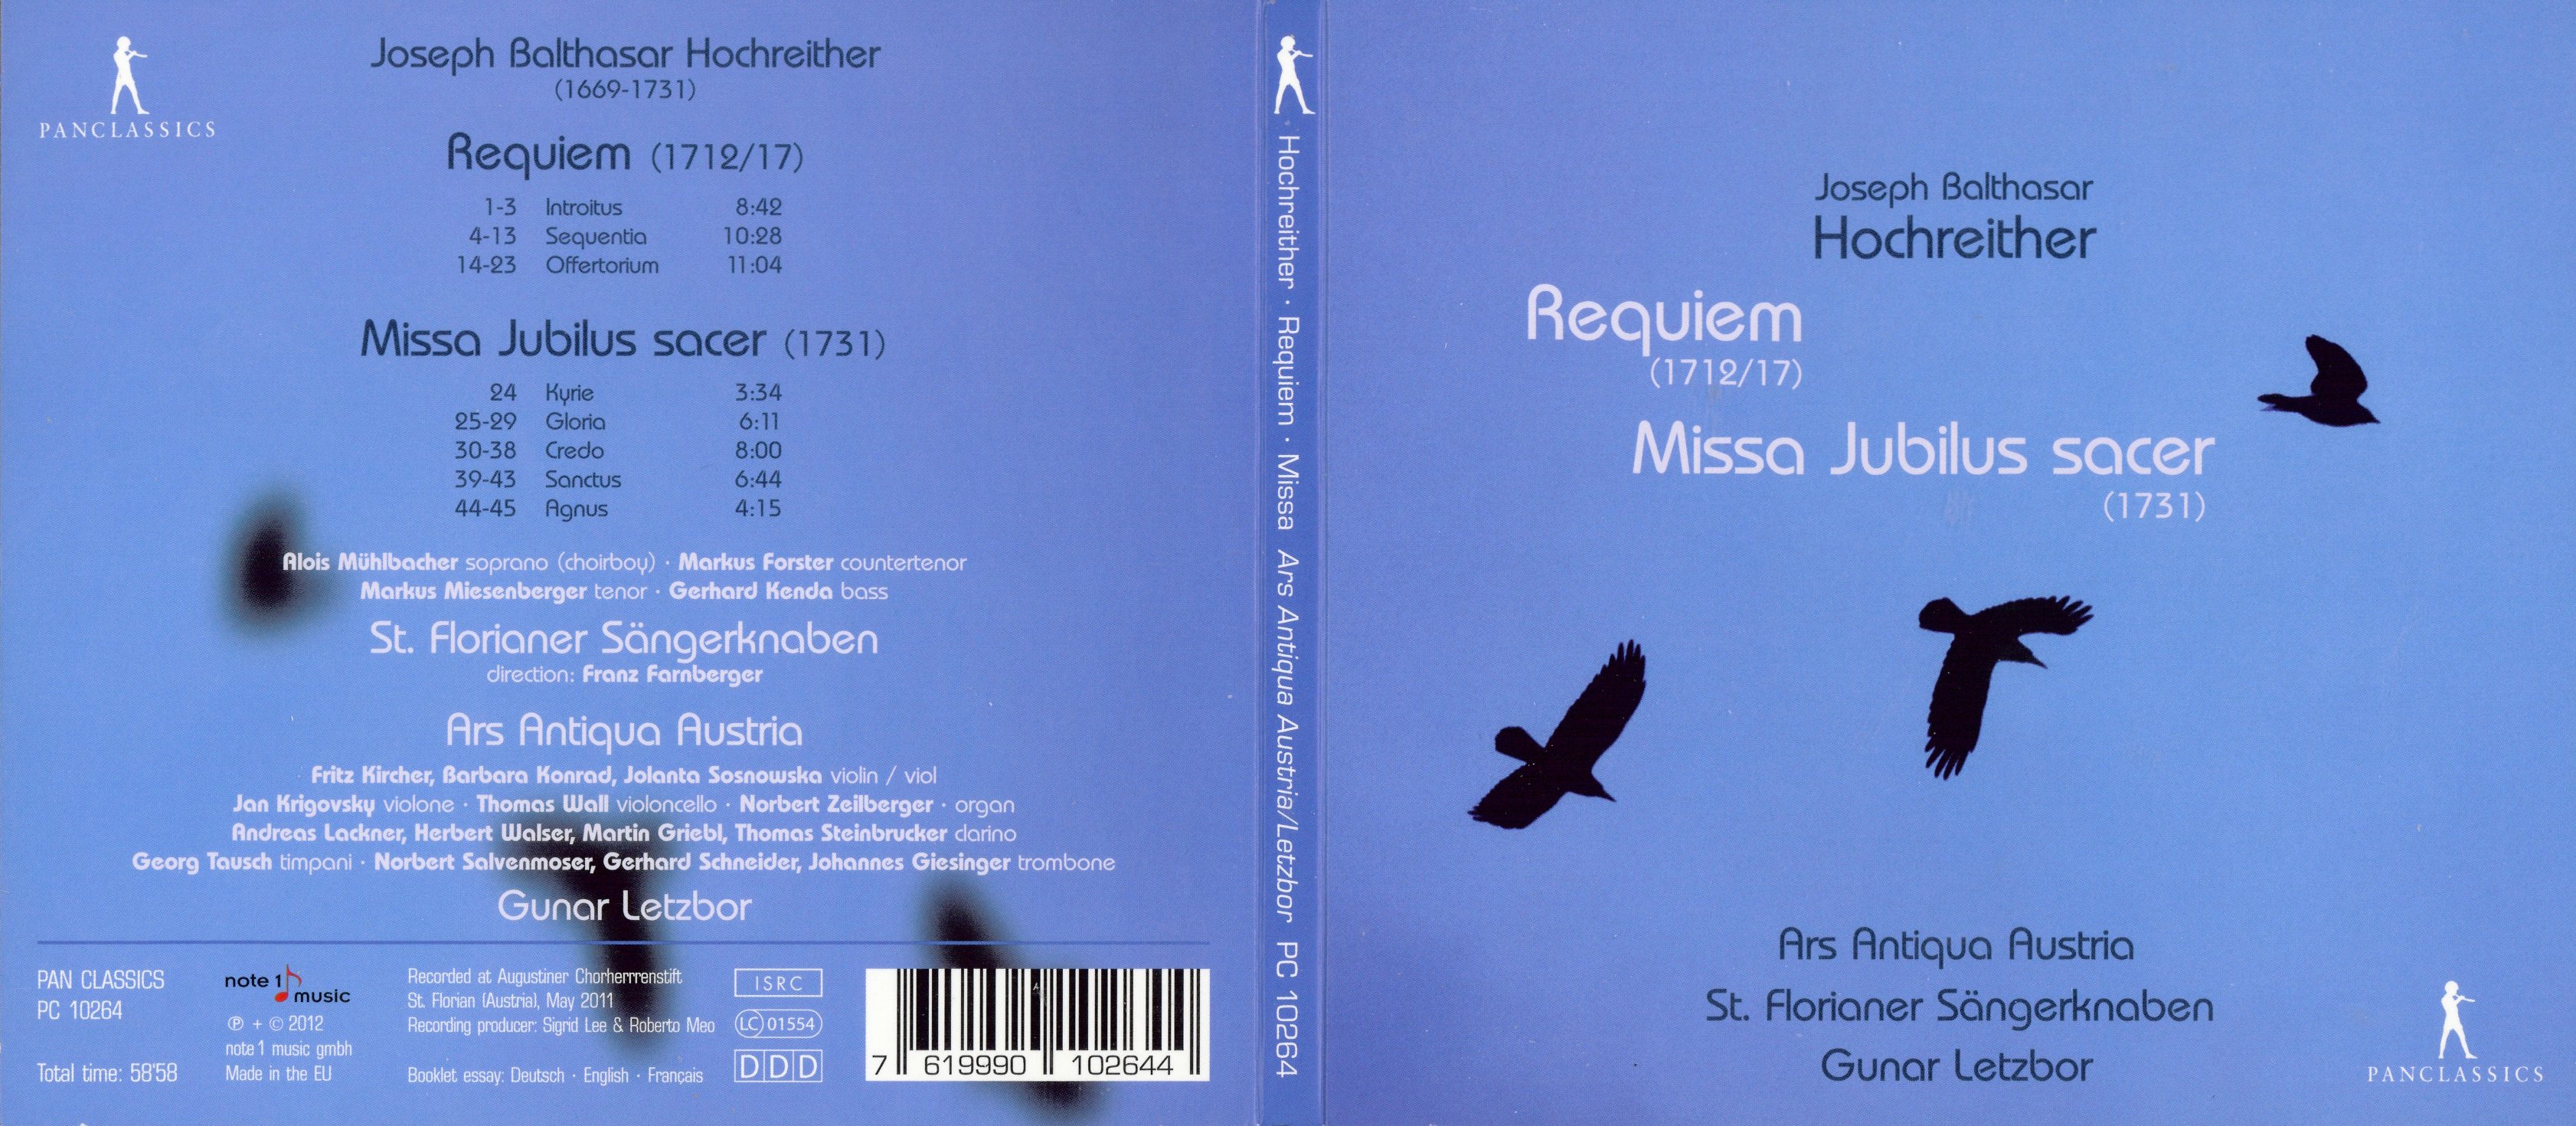 Hochreither - Requiem; Missa Jubilus sacer (Gunar Letzbor)